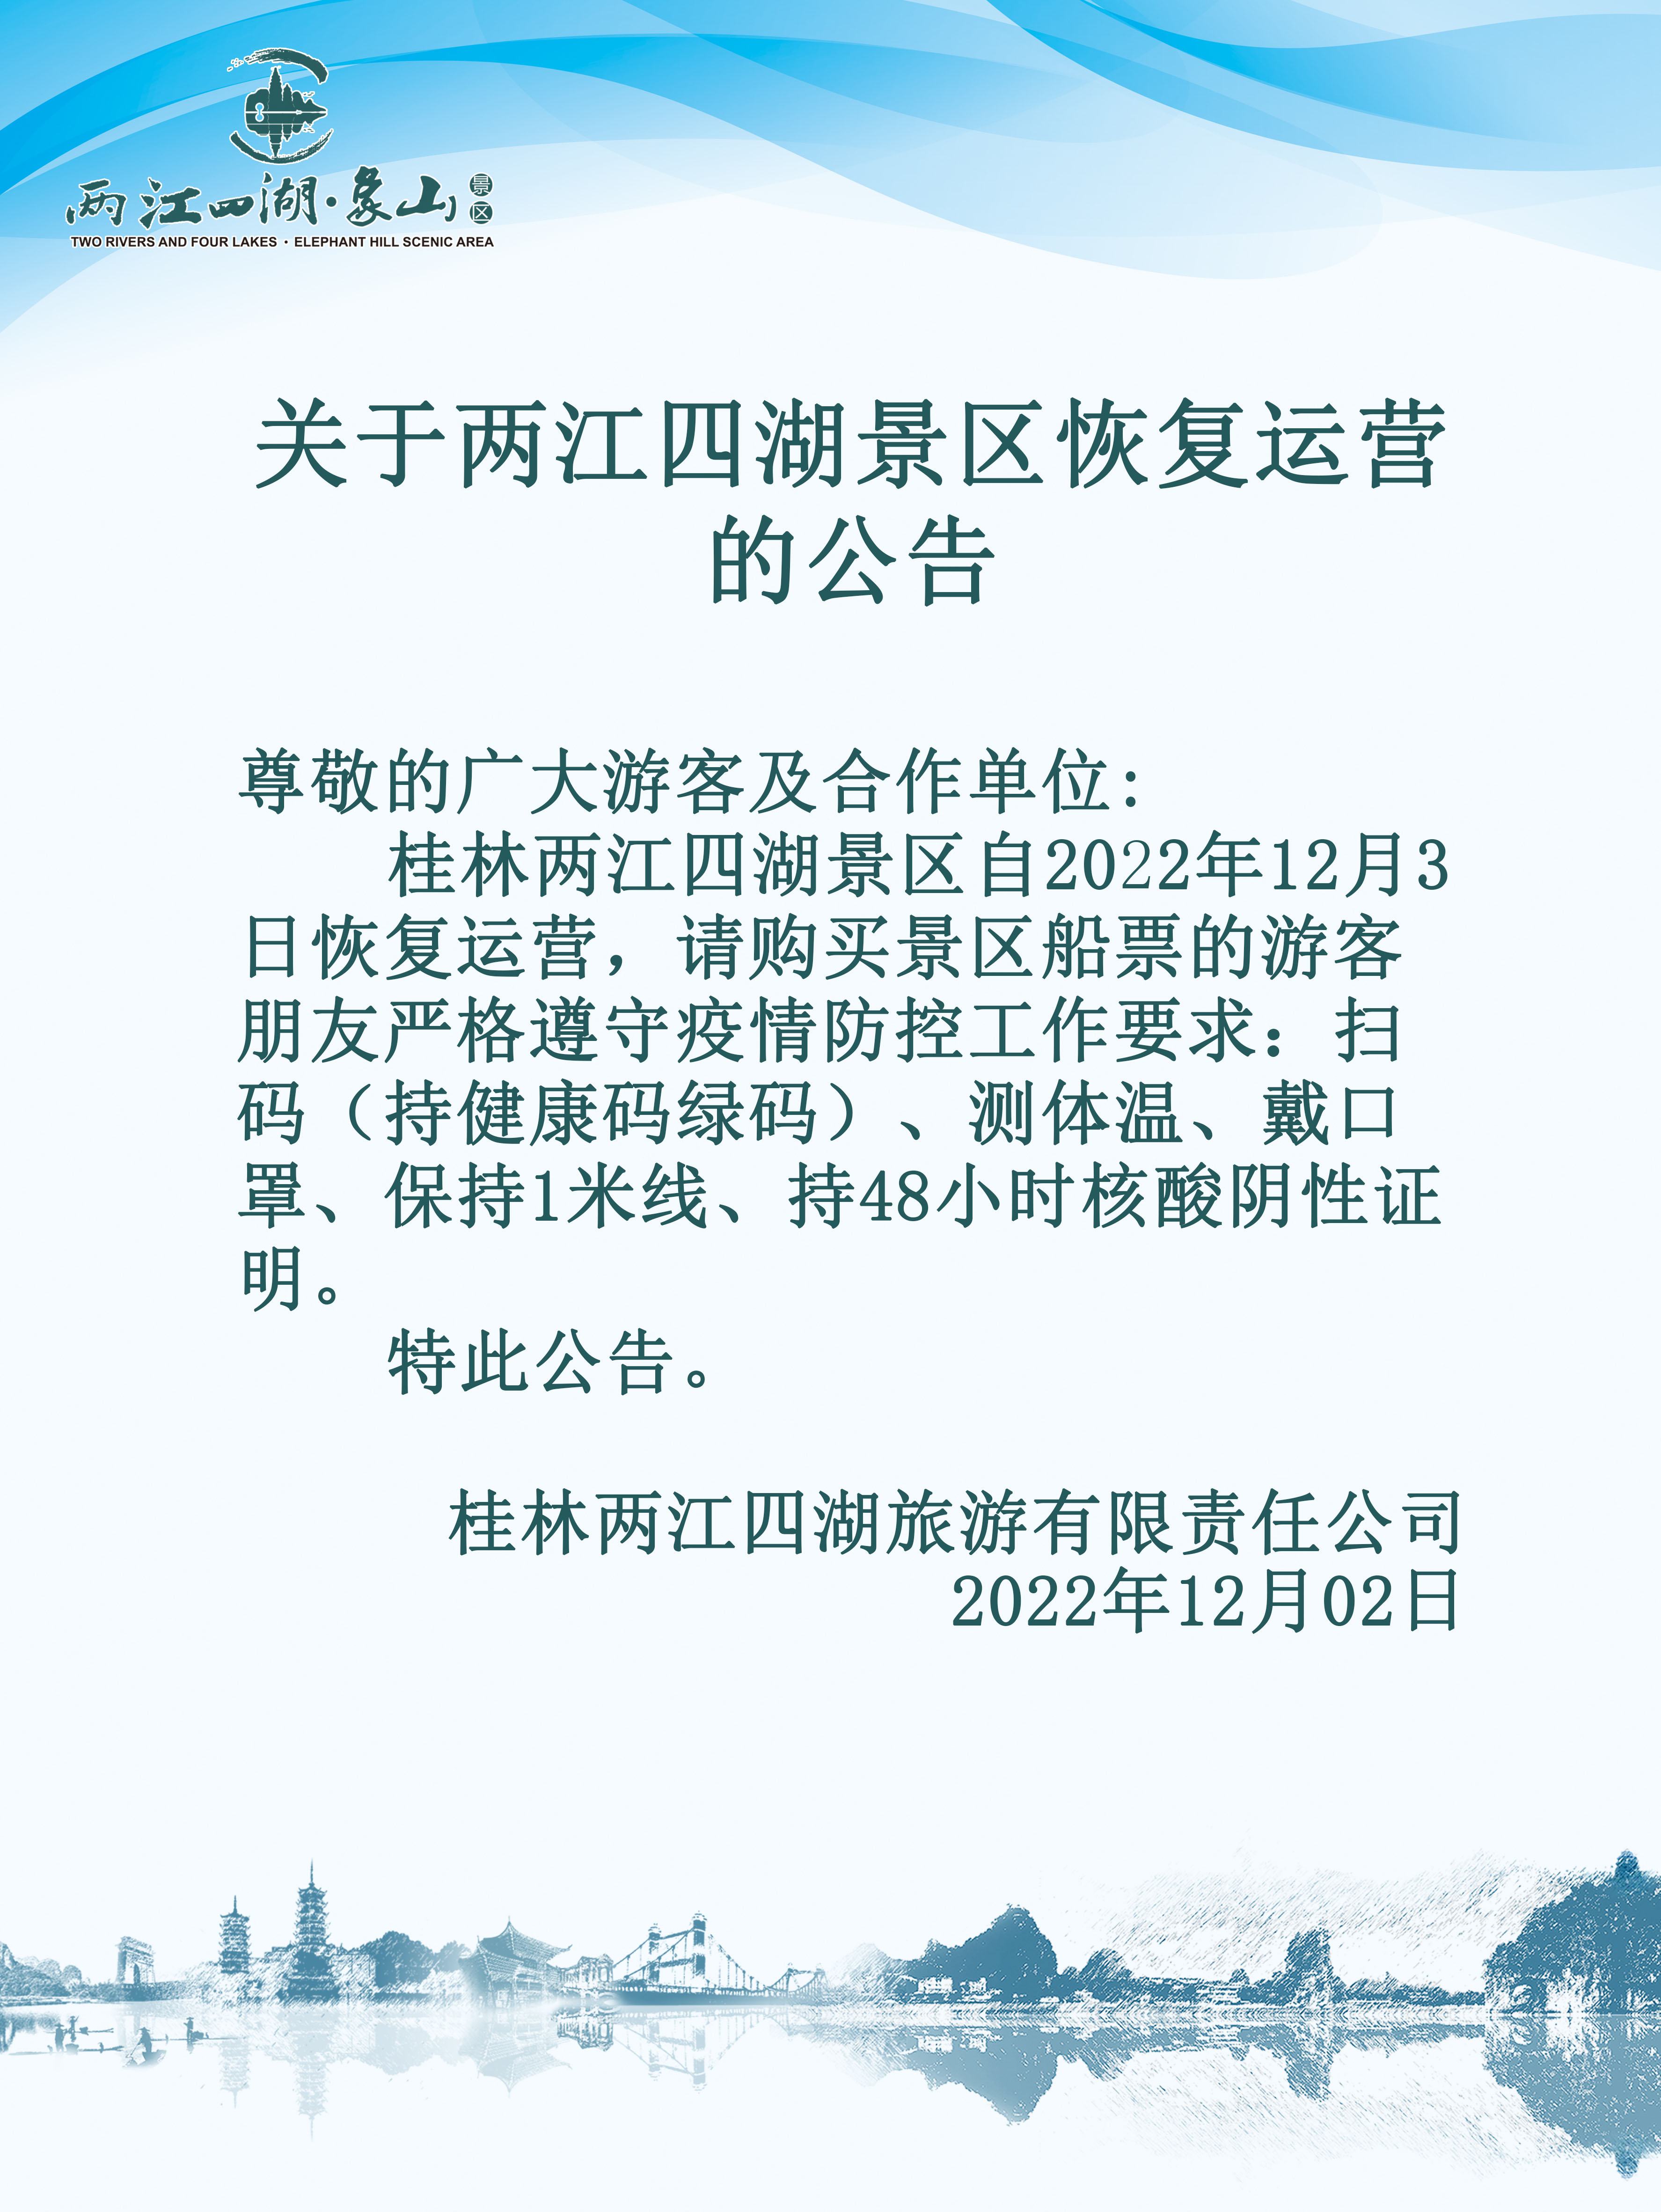 关于两江四湖景区恢复运营的公告